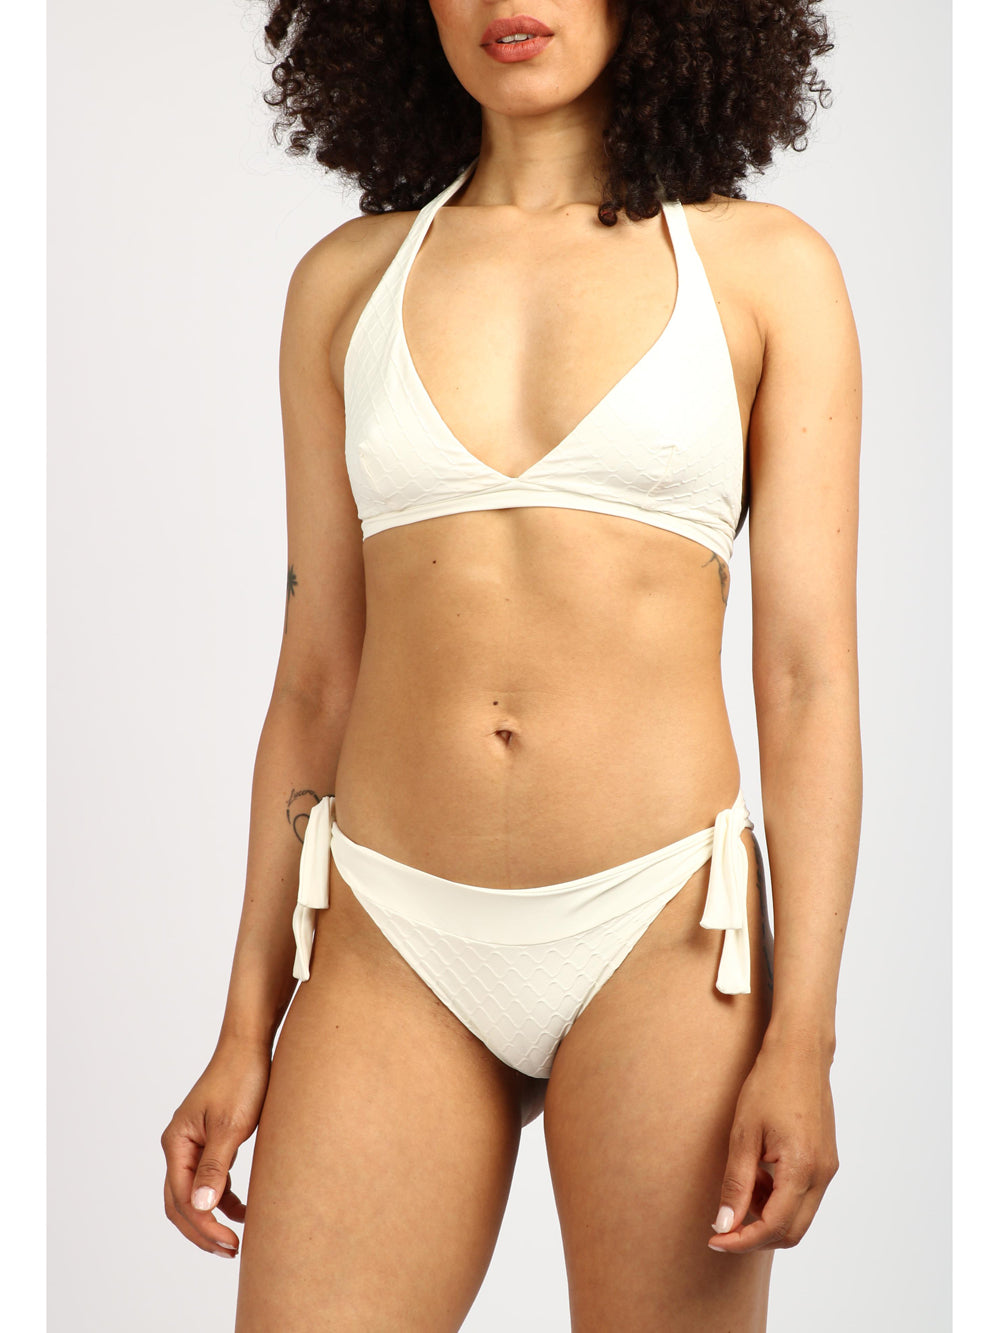 FISICO Costume Bikini a Triangolo Bianco Double Face Panna